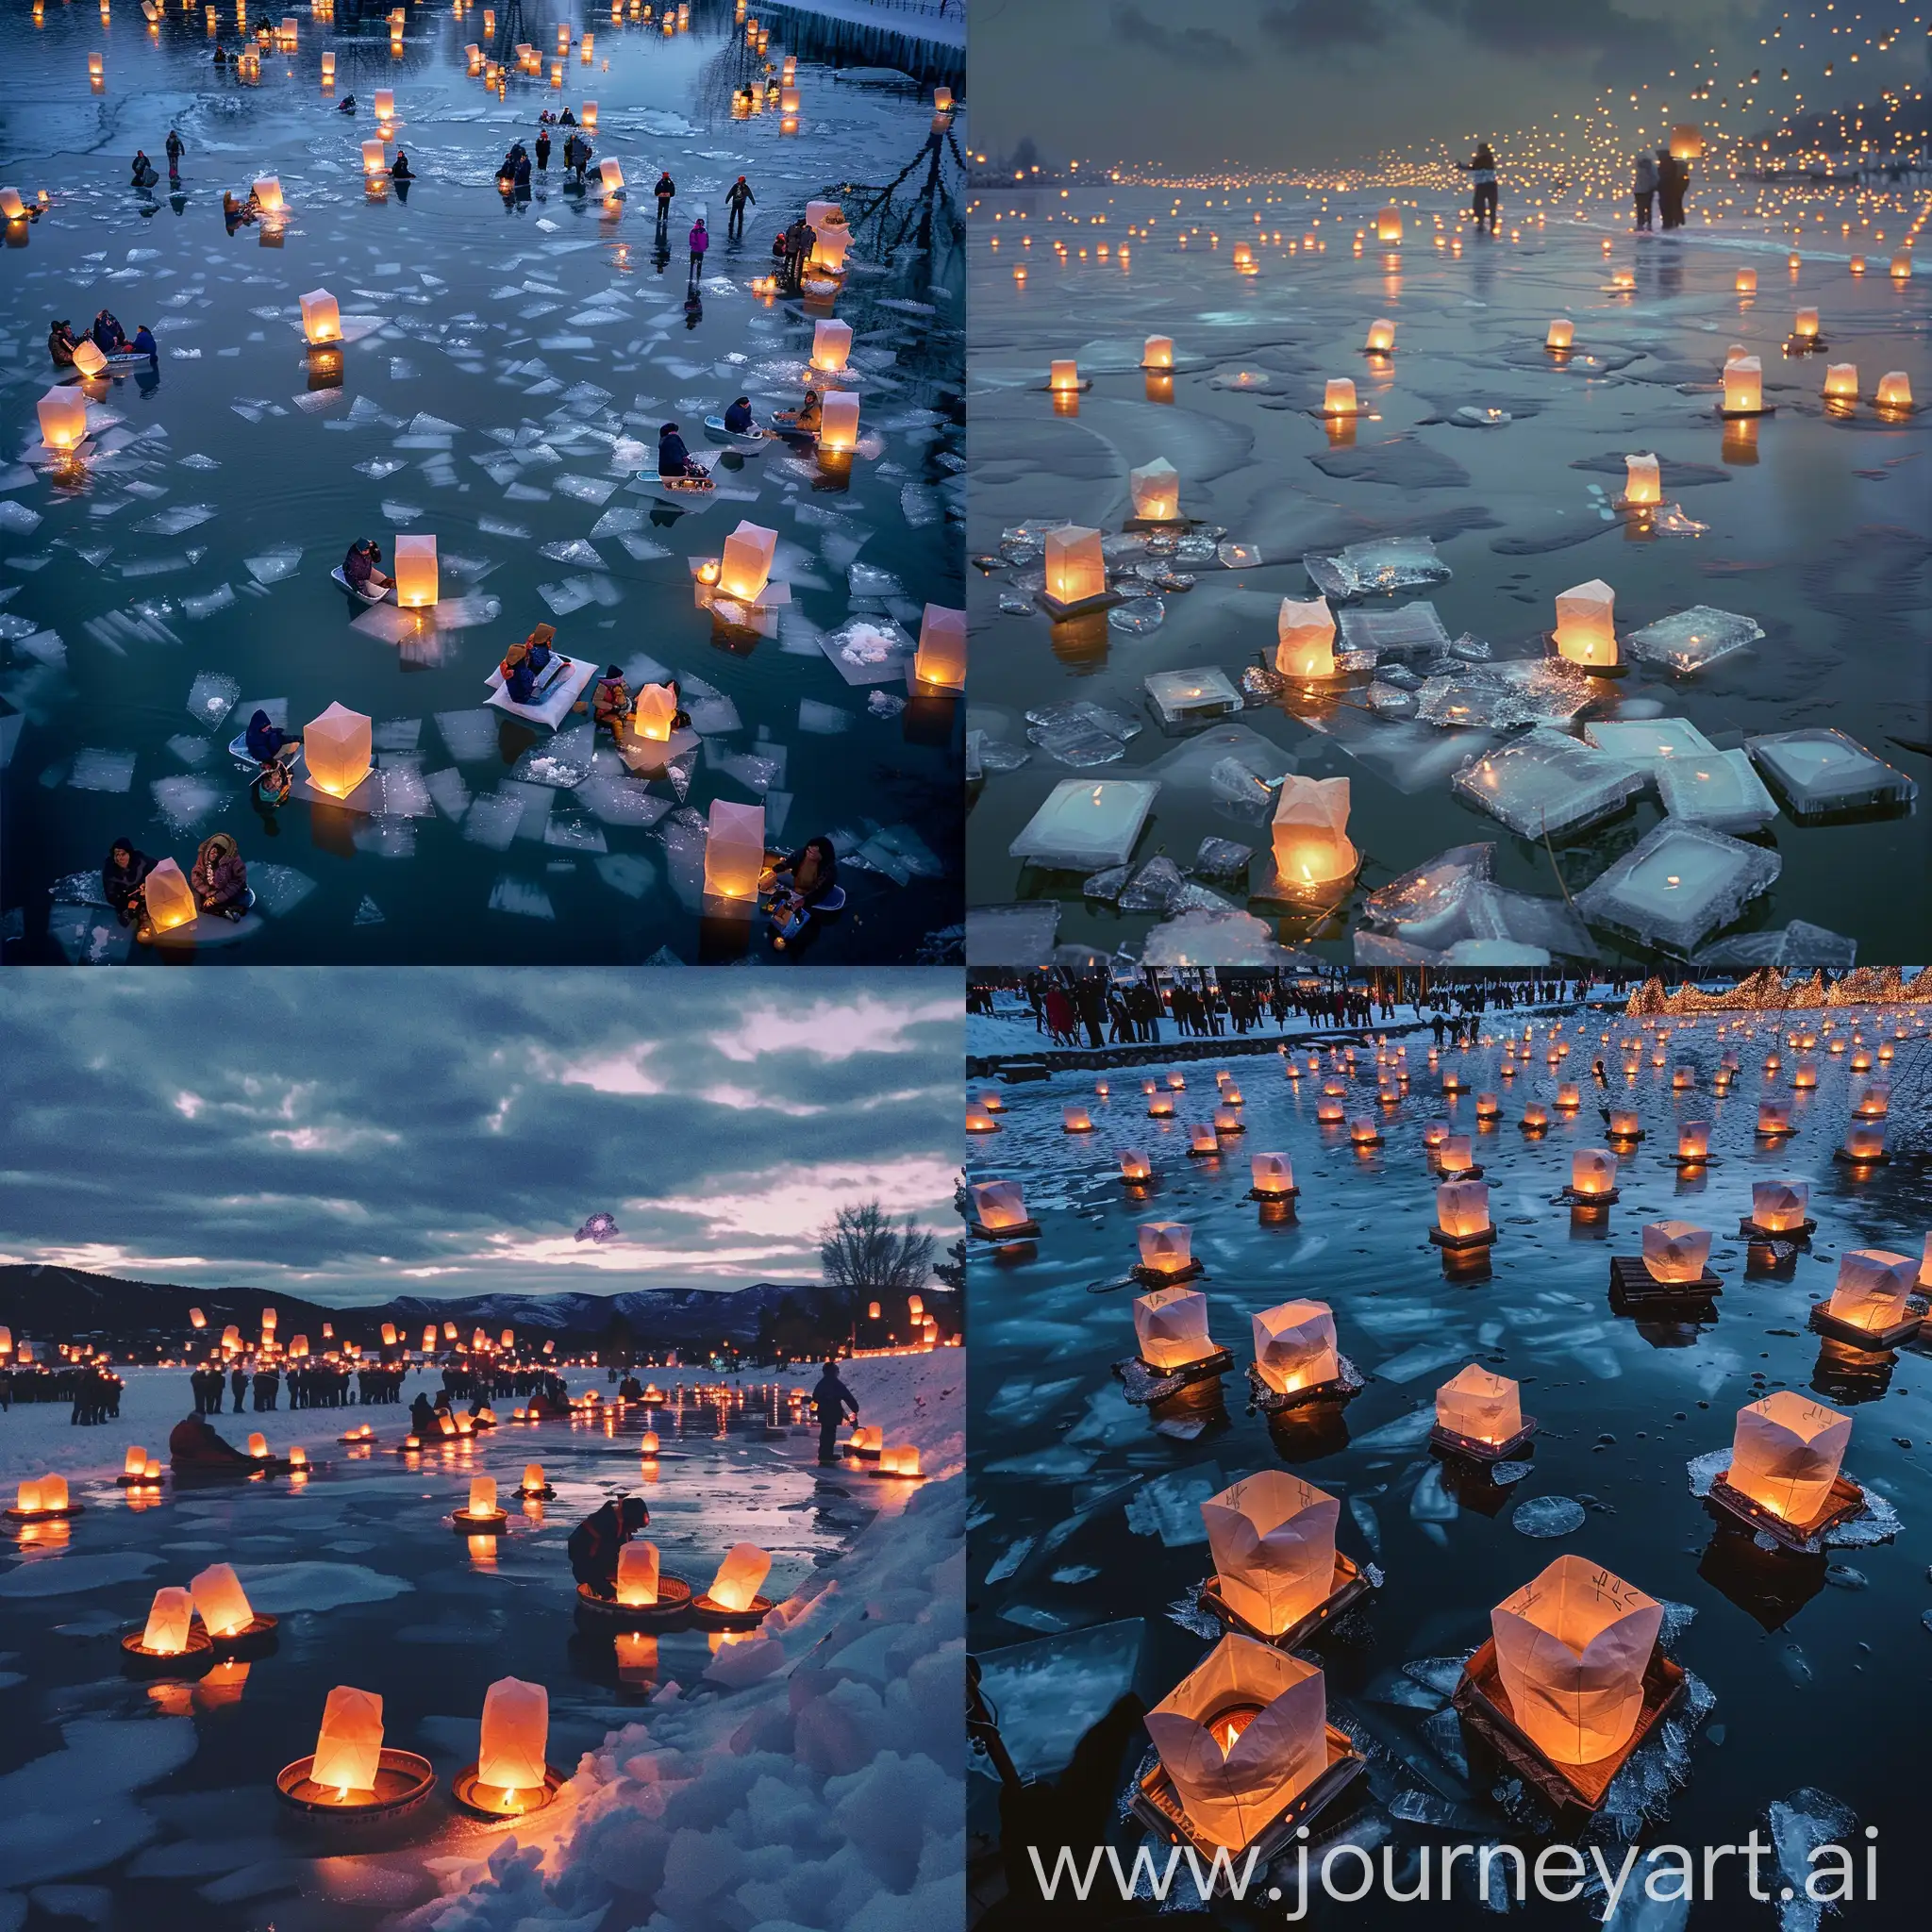 Lantern-Floating-Event-on-Ice-Ethereal-Gathering-of-Illuminated-Lanterns